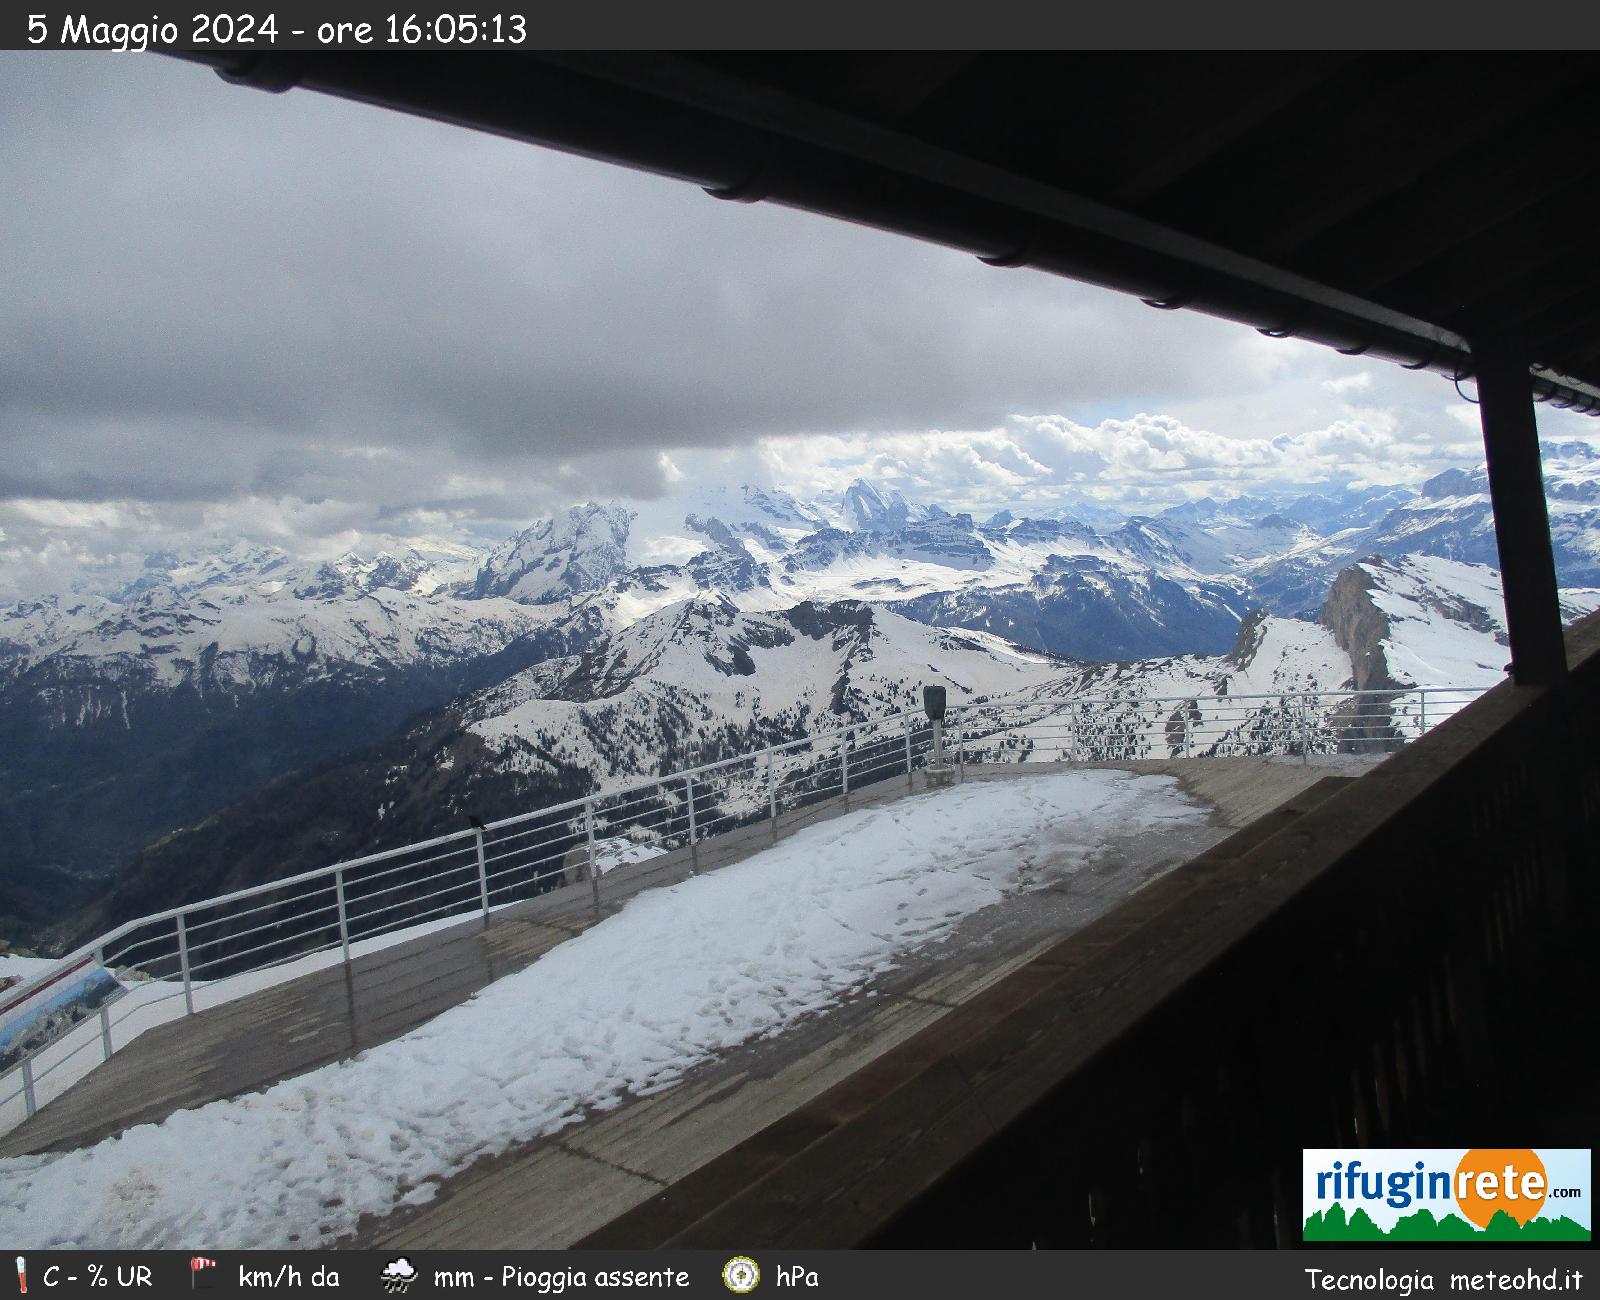 Webcam Rifugio Lagazuoi - panorama verso Col di Lana e Marmolada